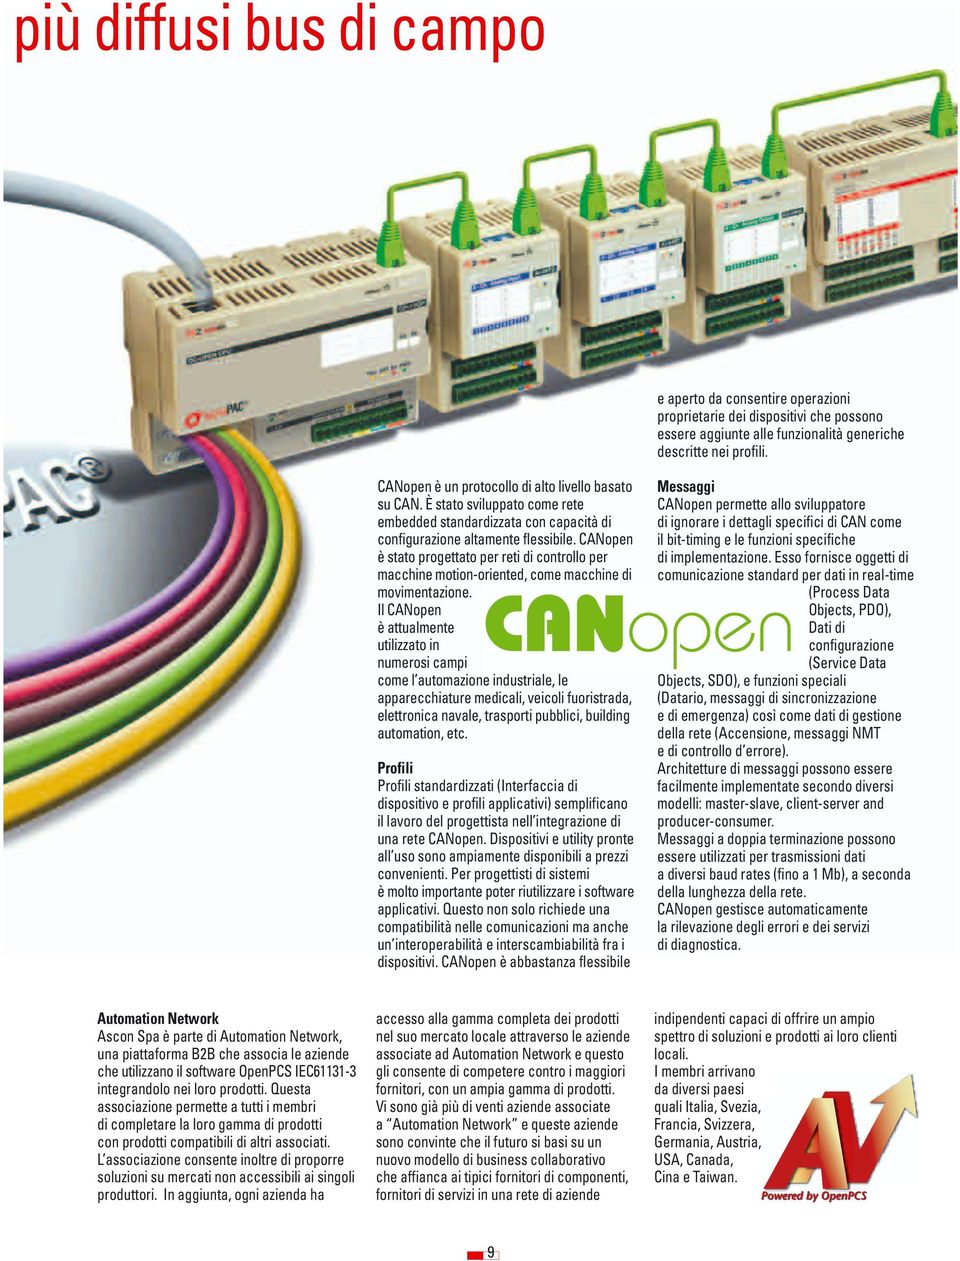 CANopen è stato progettato per reti di controllo per macchine motion-oriented, come macchine di movimentazione.